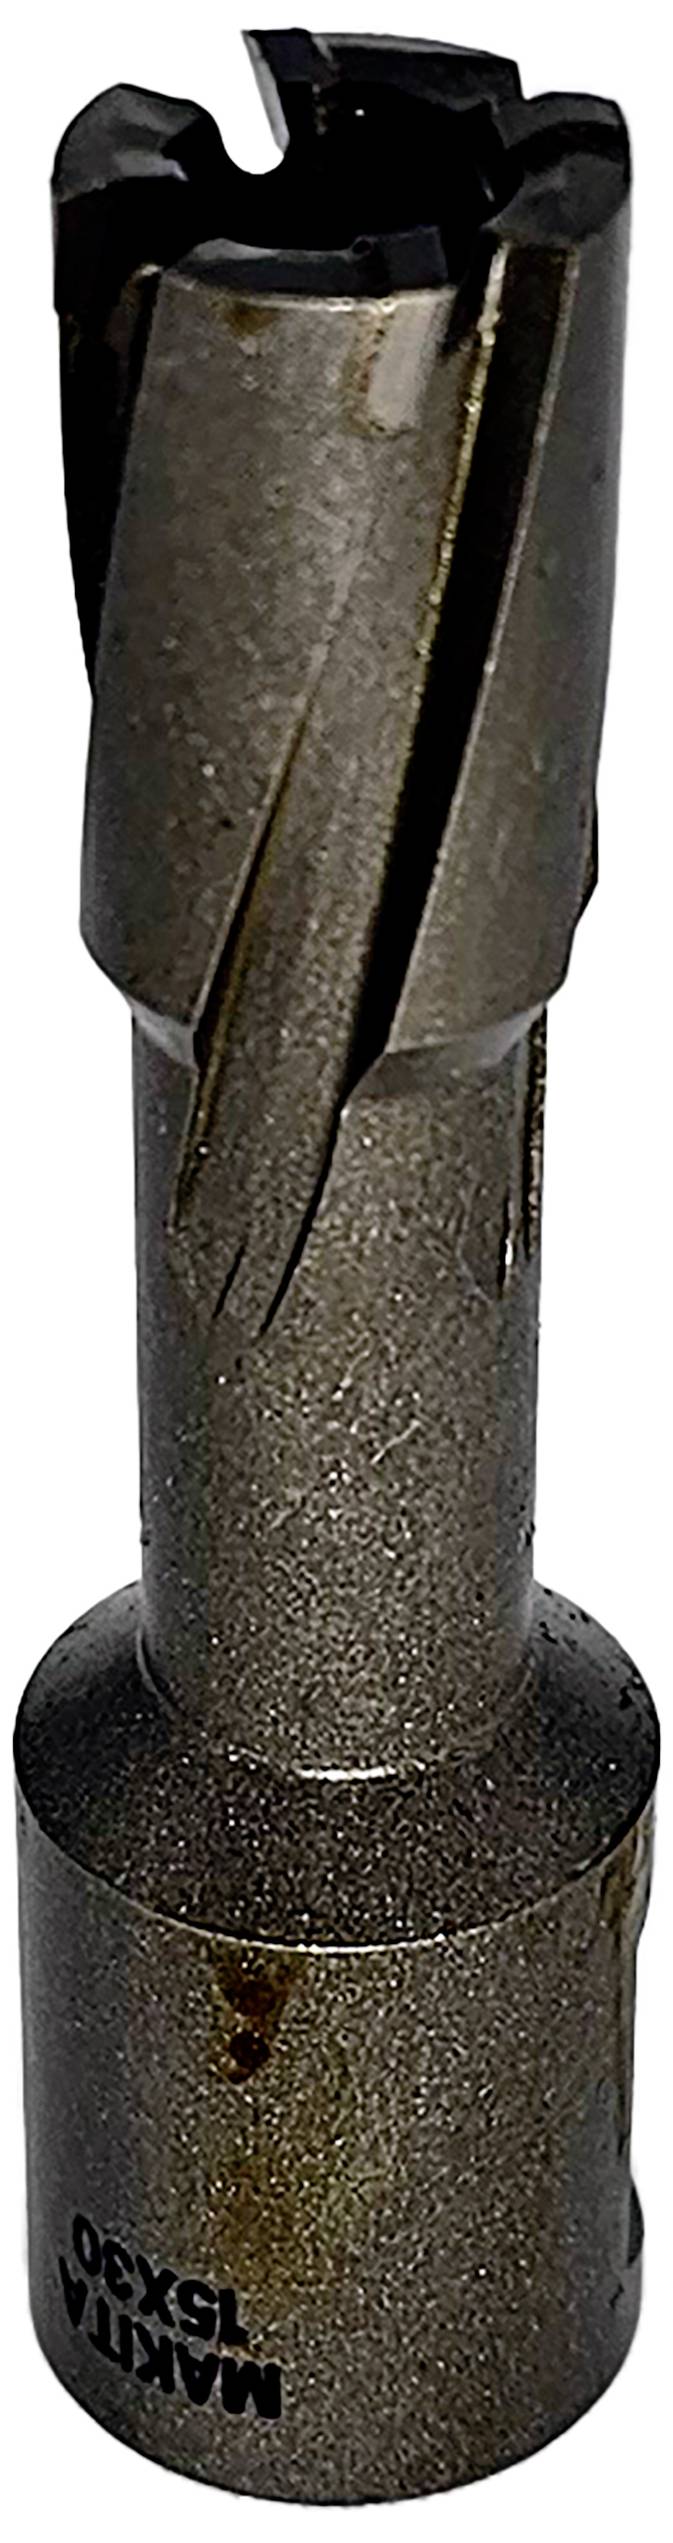 UD00UPC15S Kernbohrer 15 mm 1 Stück (UD00UPC15S)